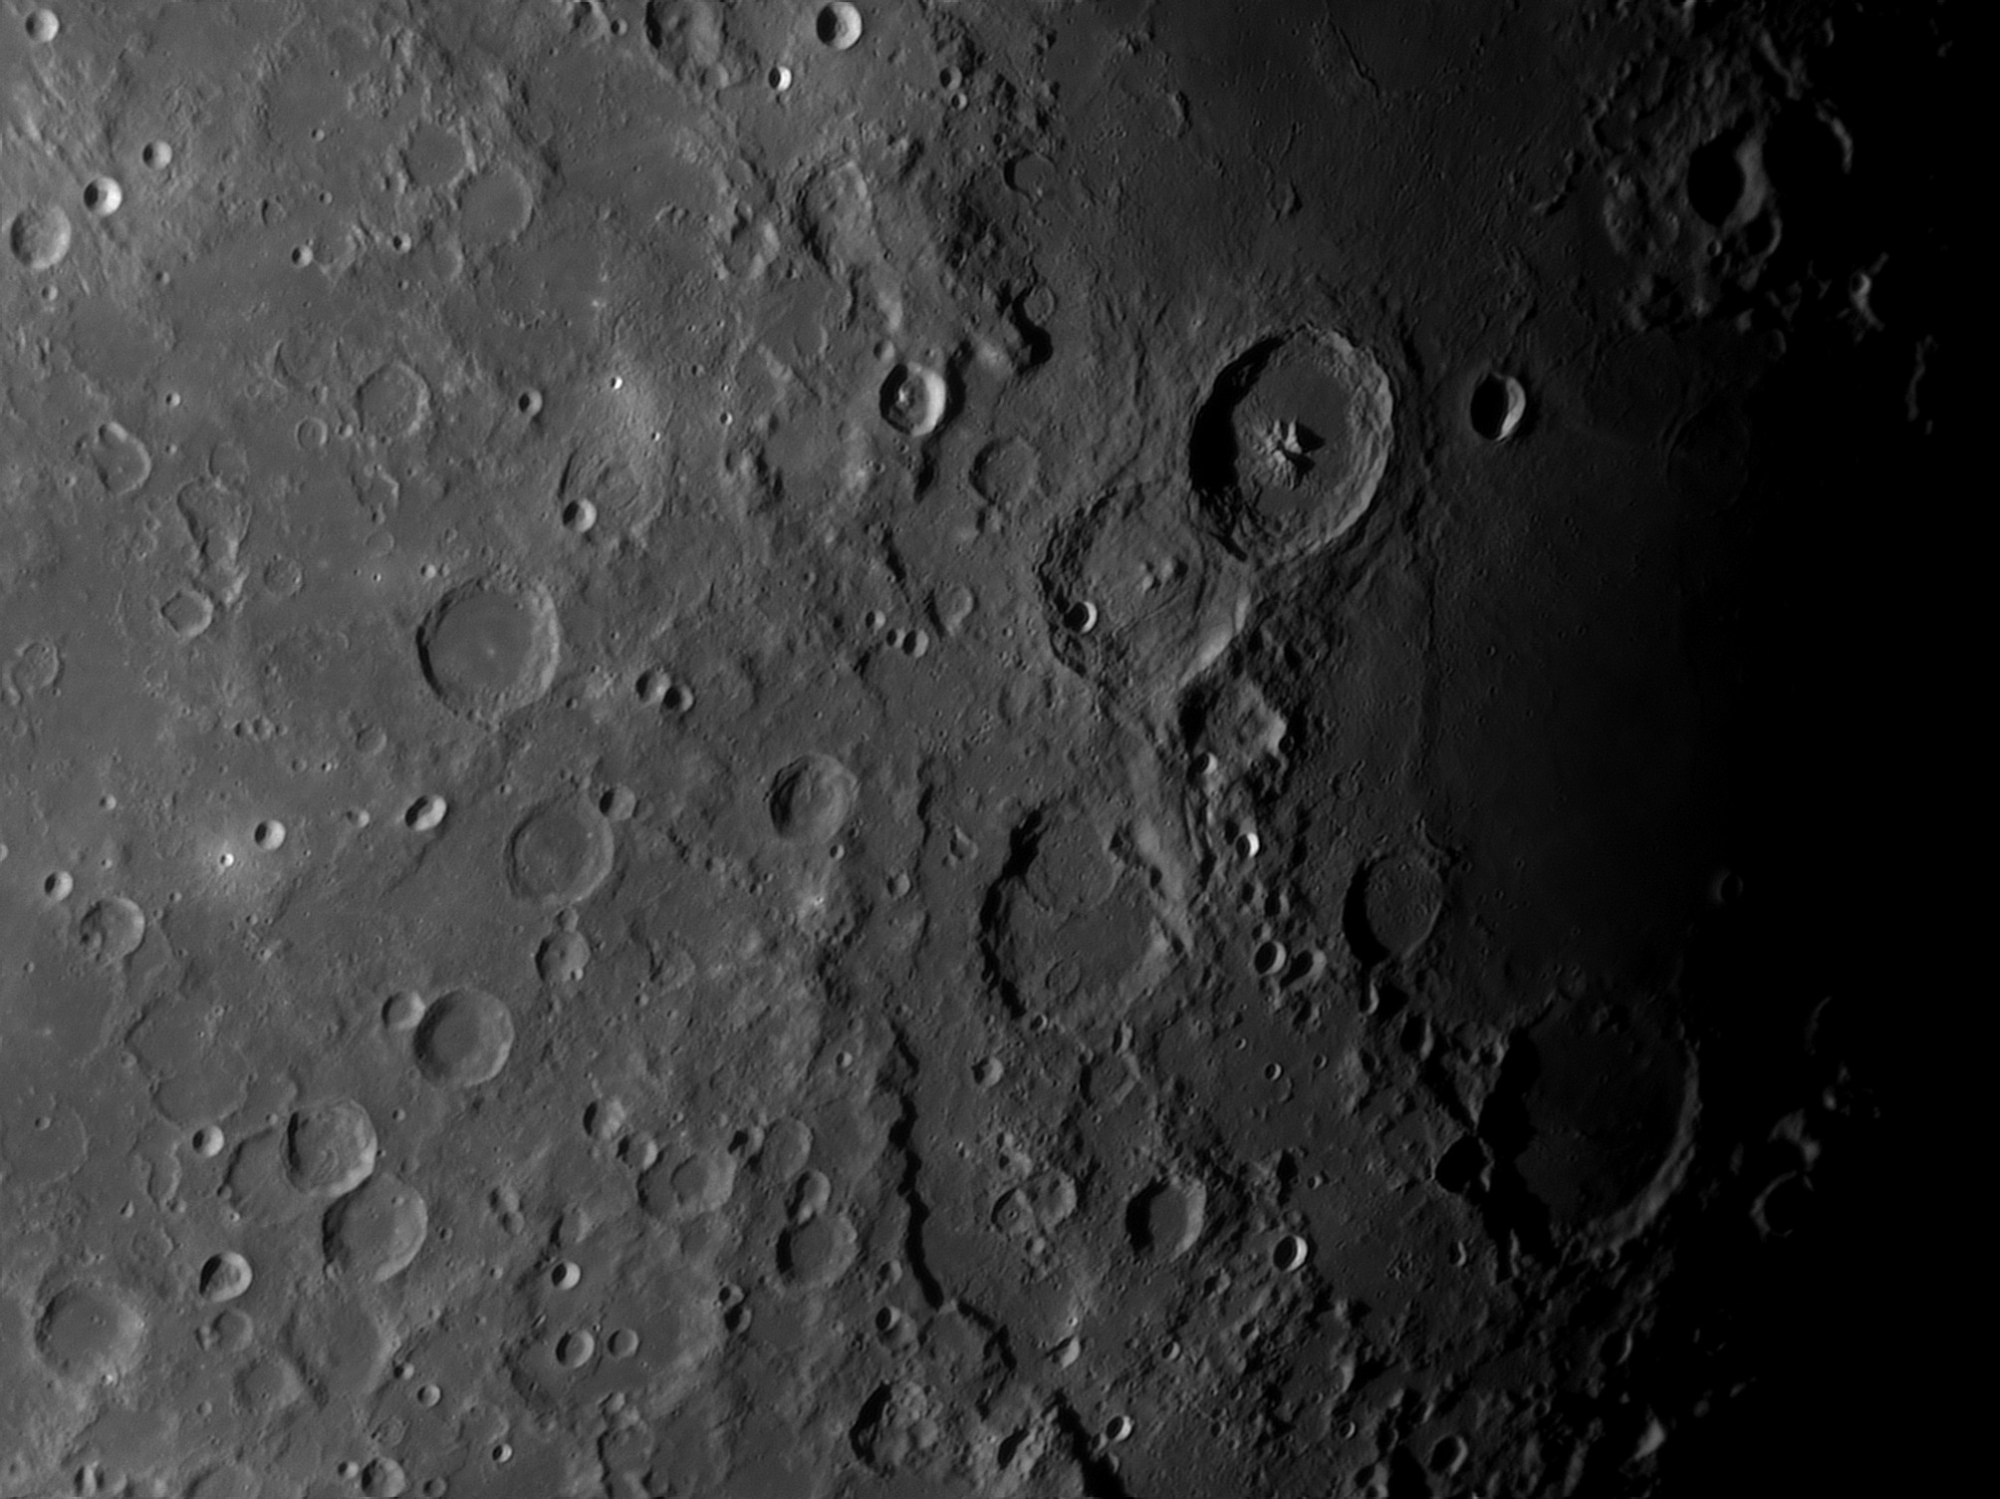 Lune-20201104_CCT-baAS.thumb.jpg.e53b5d3255dda2b849f6a441ca2e6659.jpg